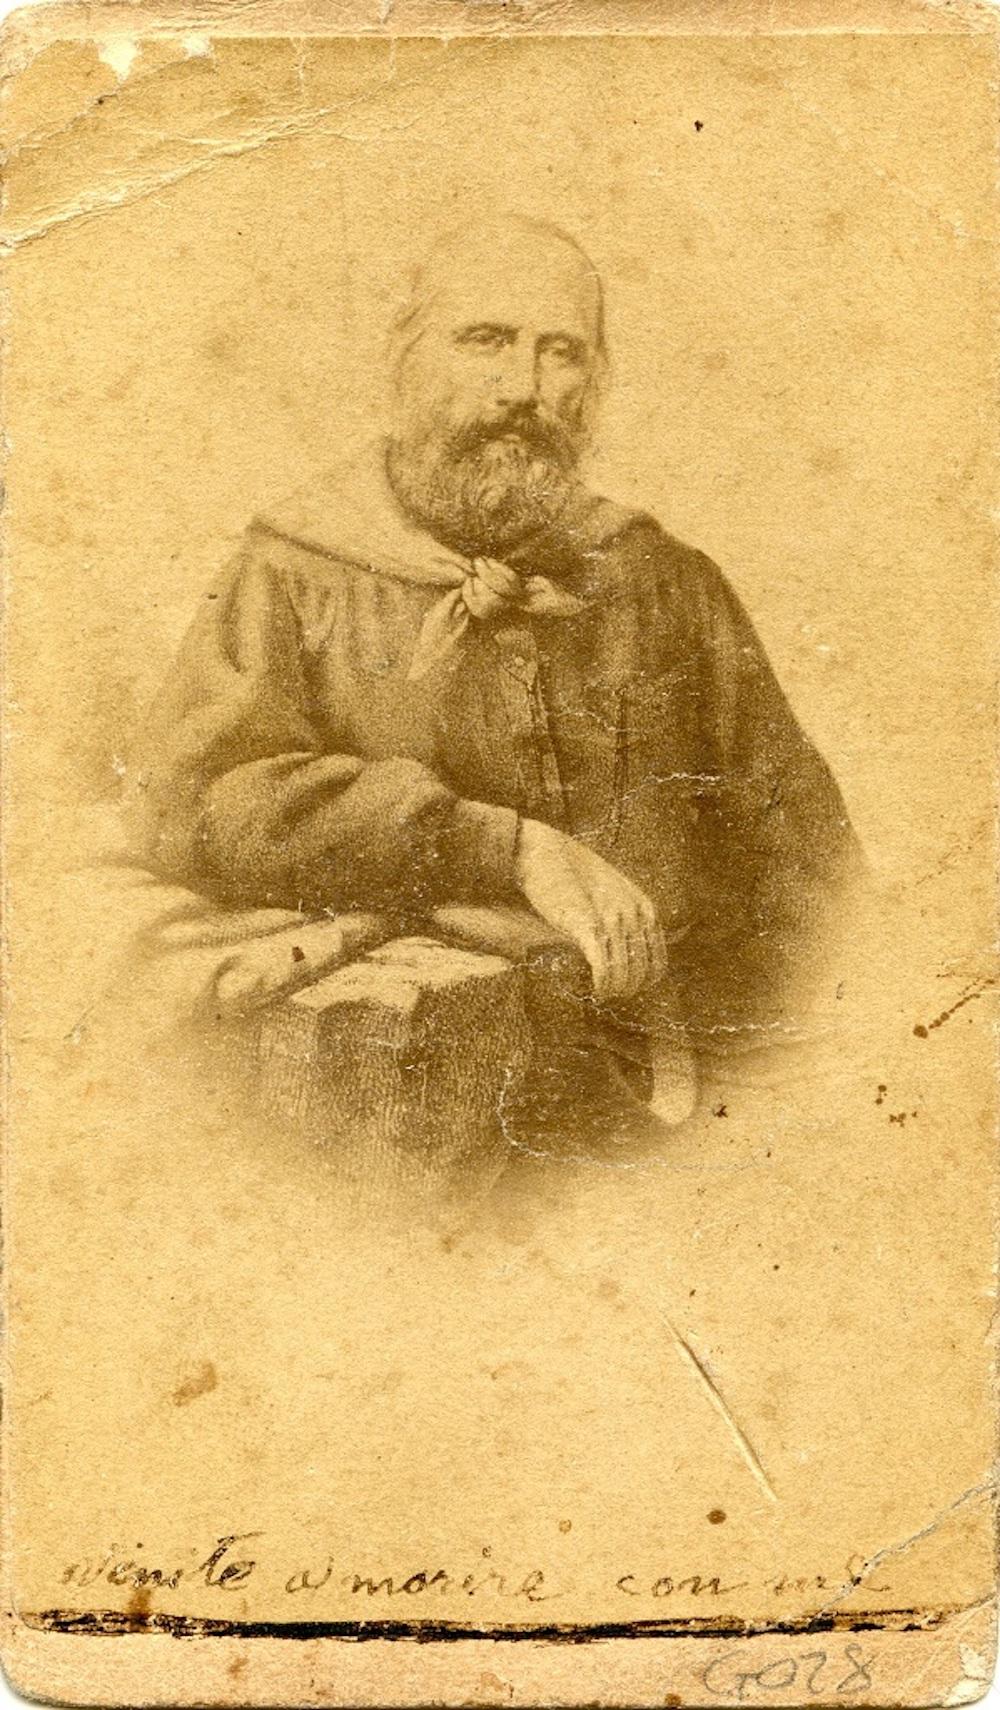 Unknown Portrait Photograph - Portrait of Garibaldi - Original Albumen Print with Hand-Written Notes - 1860/70